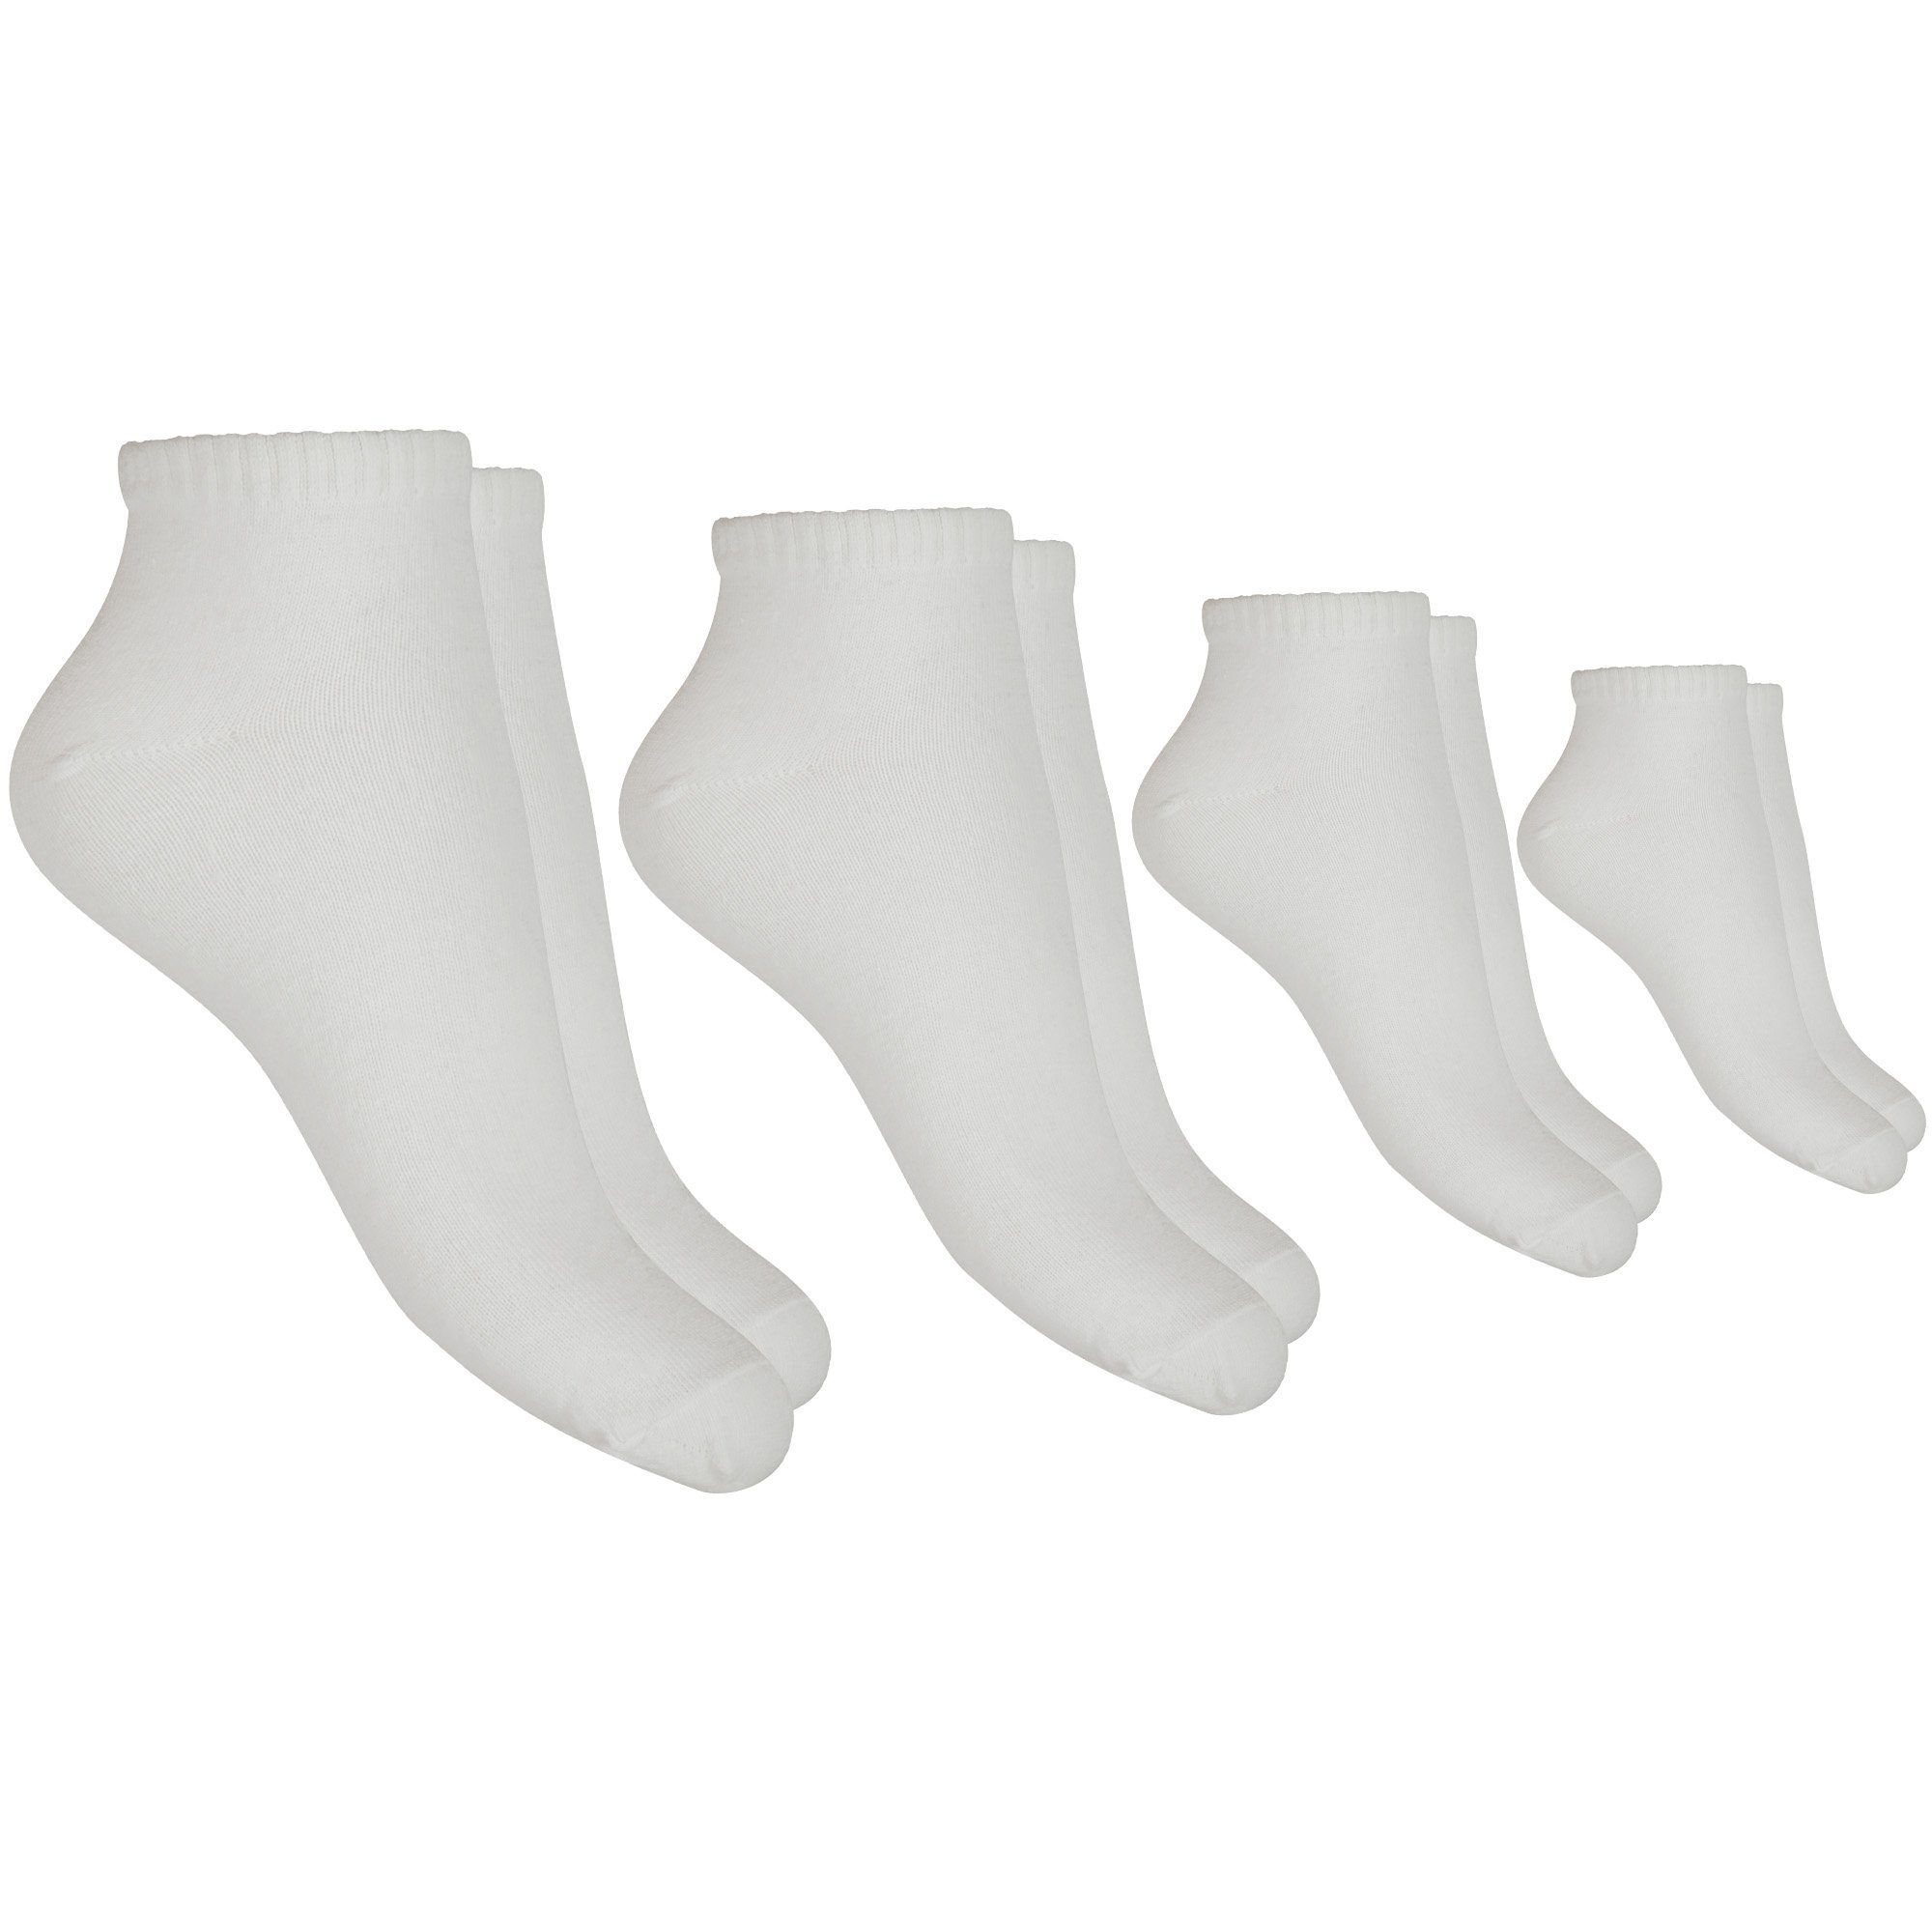 hemmy Fashion Sneakersocken (4-Paar, 4 Paar) Sneaker - Herrensocken (4 Paar) Basic Socken "Weiß", Größe: 39-42 mit komfortablem Rippbündchen, hoher Baumwollanteil